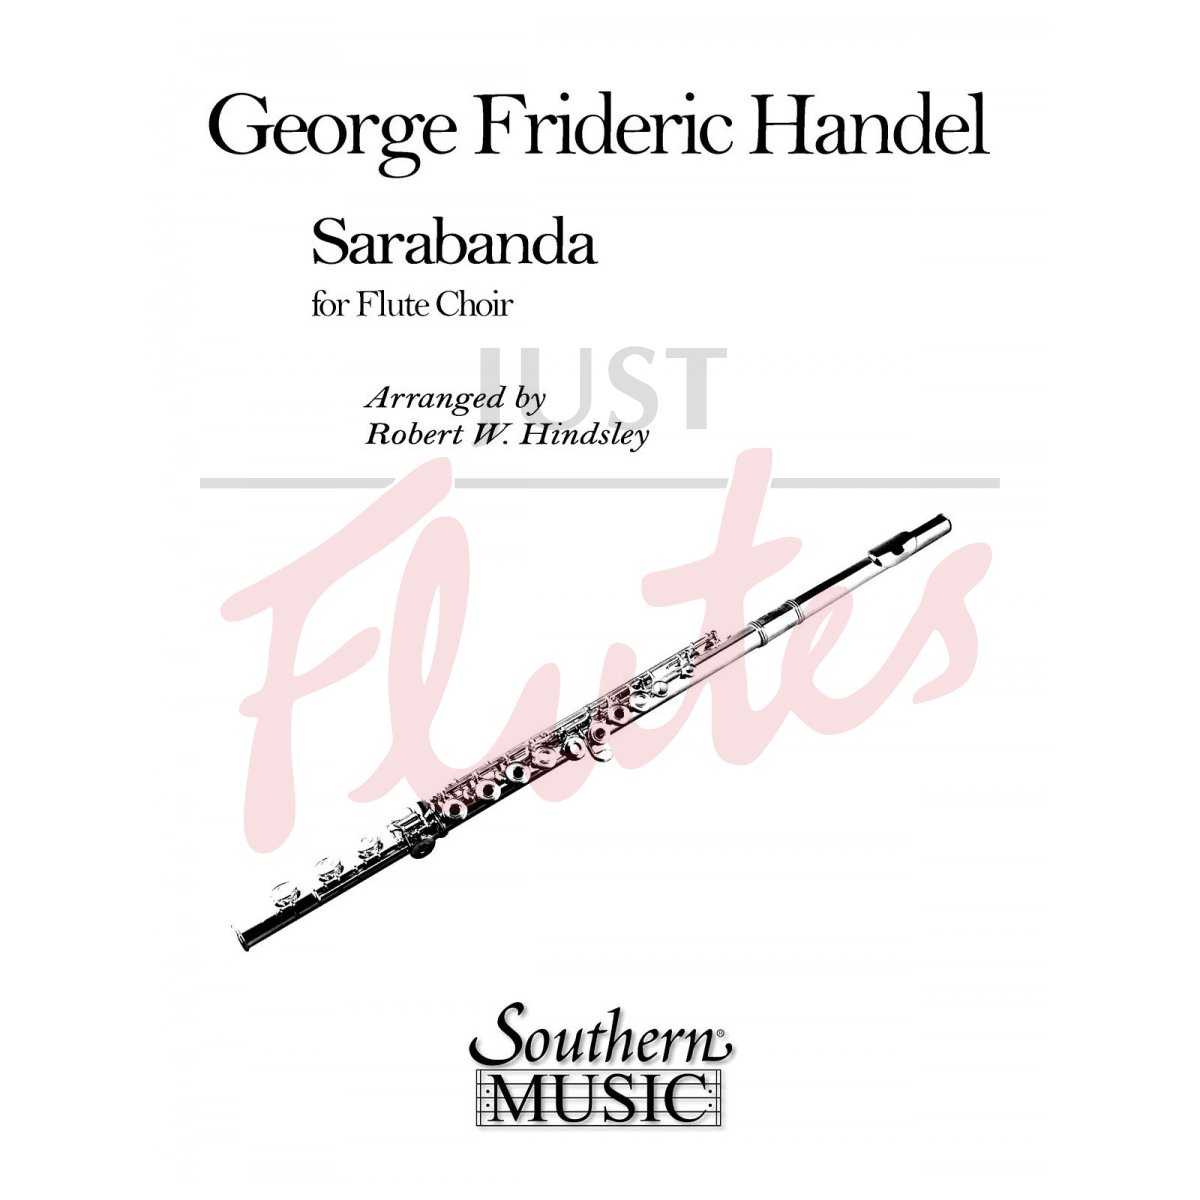 Sarabanda for Flute Choir